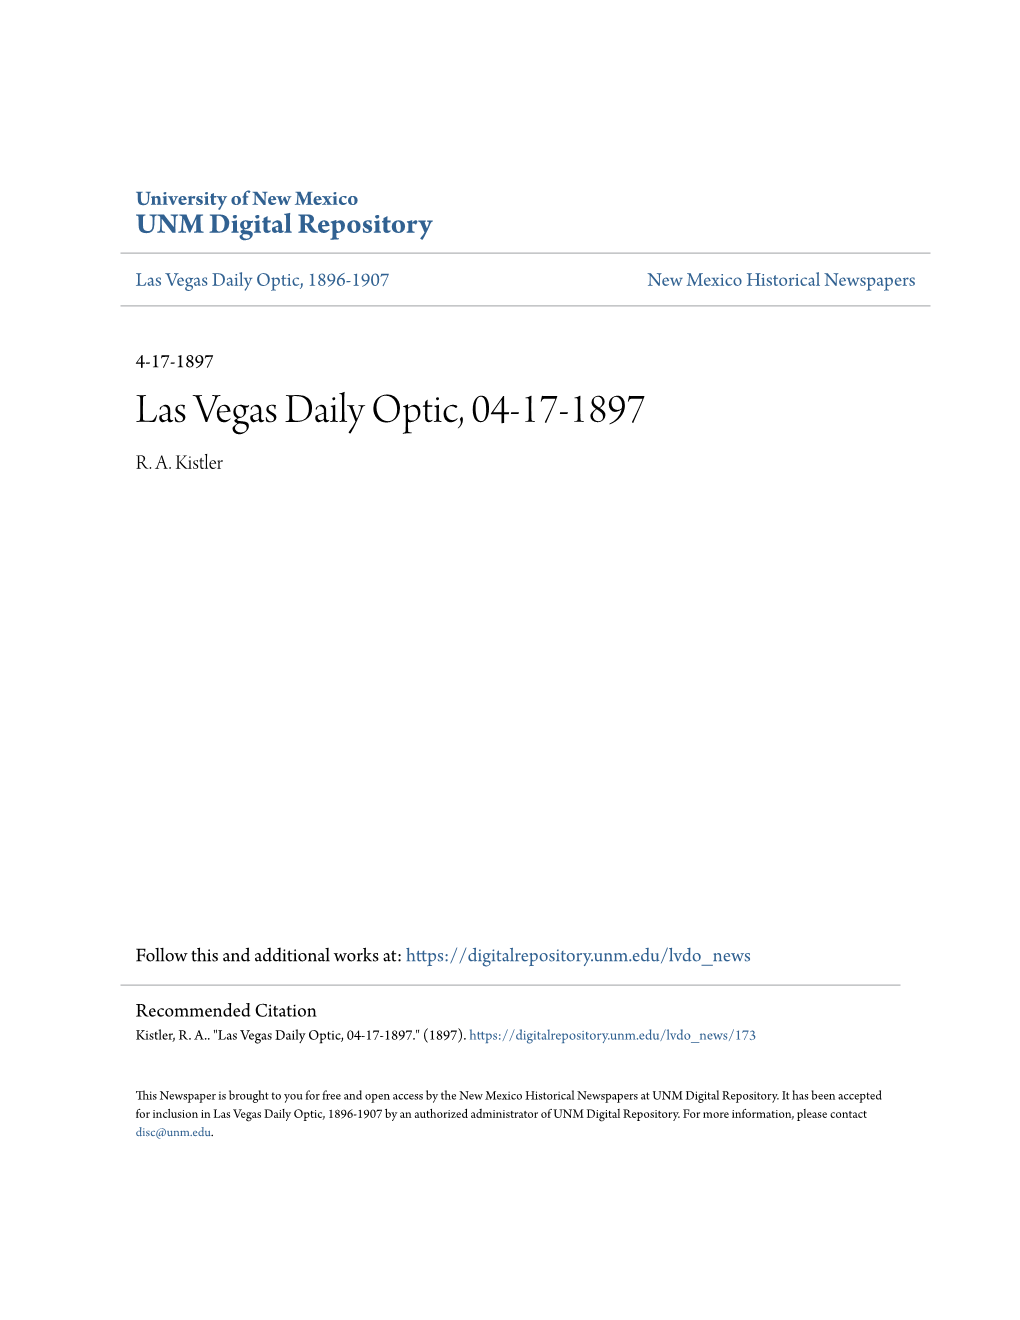 Las Vegas Daily Optic, 04-17-1897 R